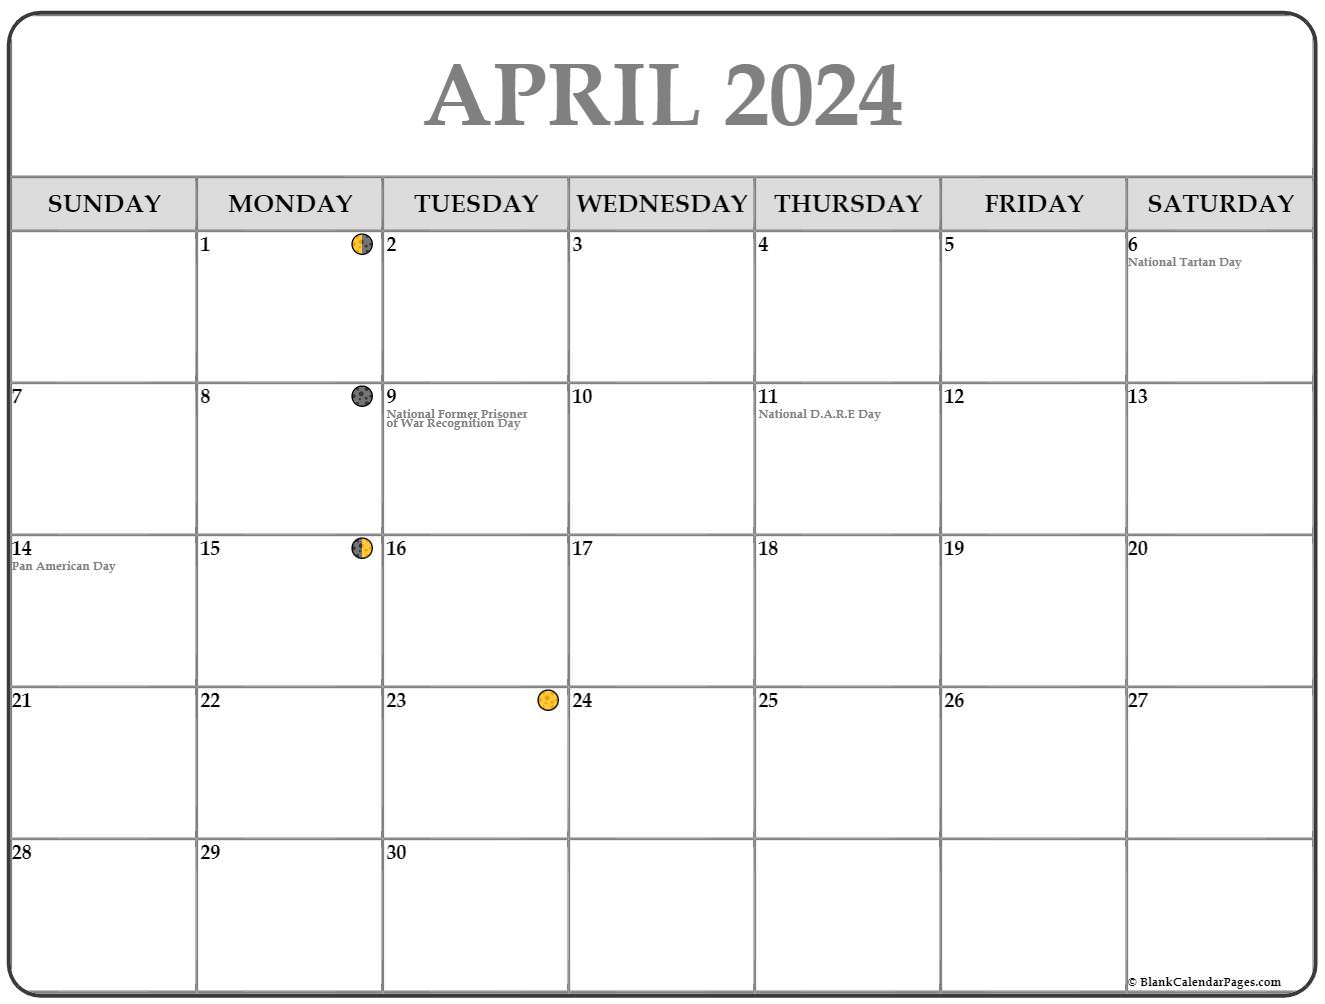 April 2024 Calendar Moon1 